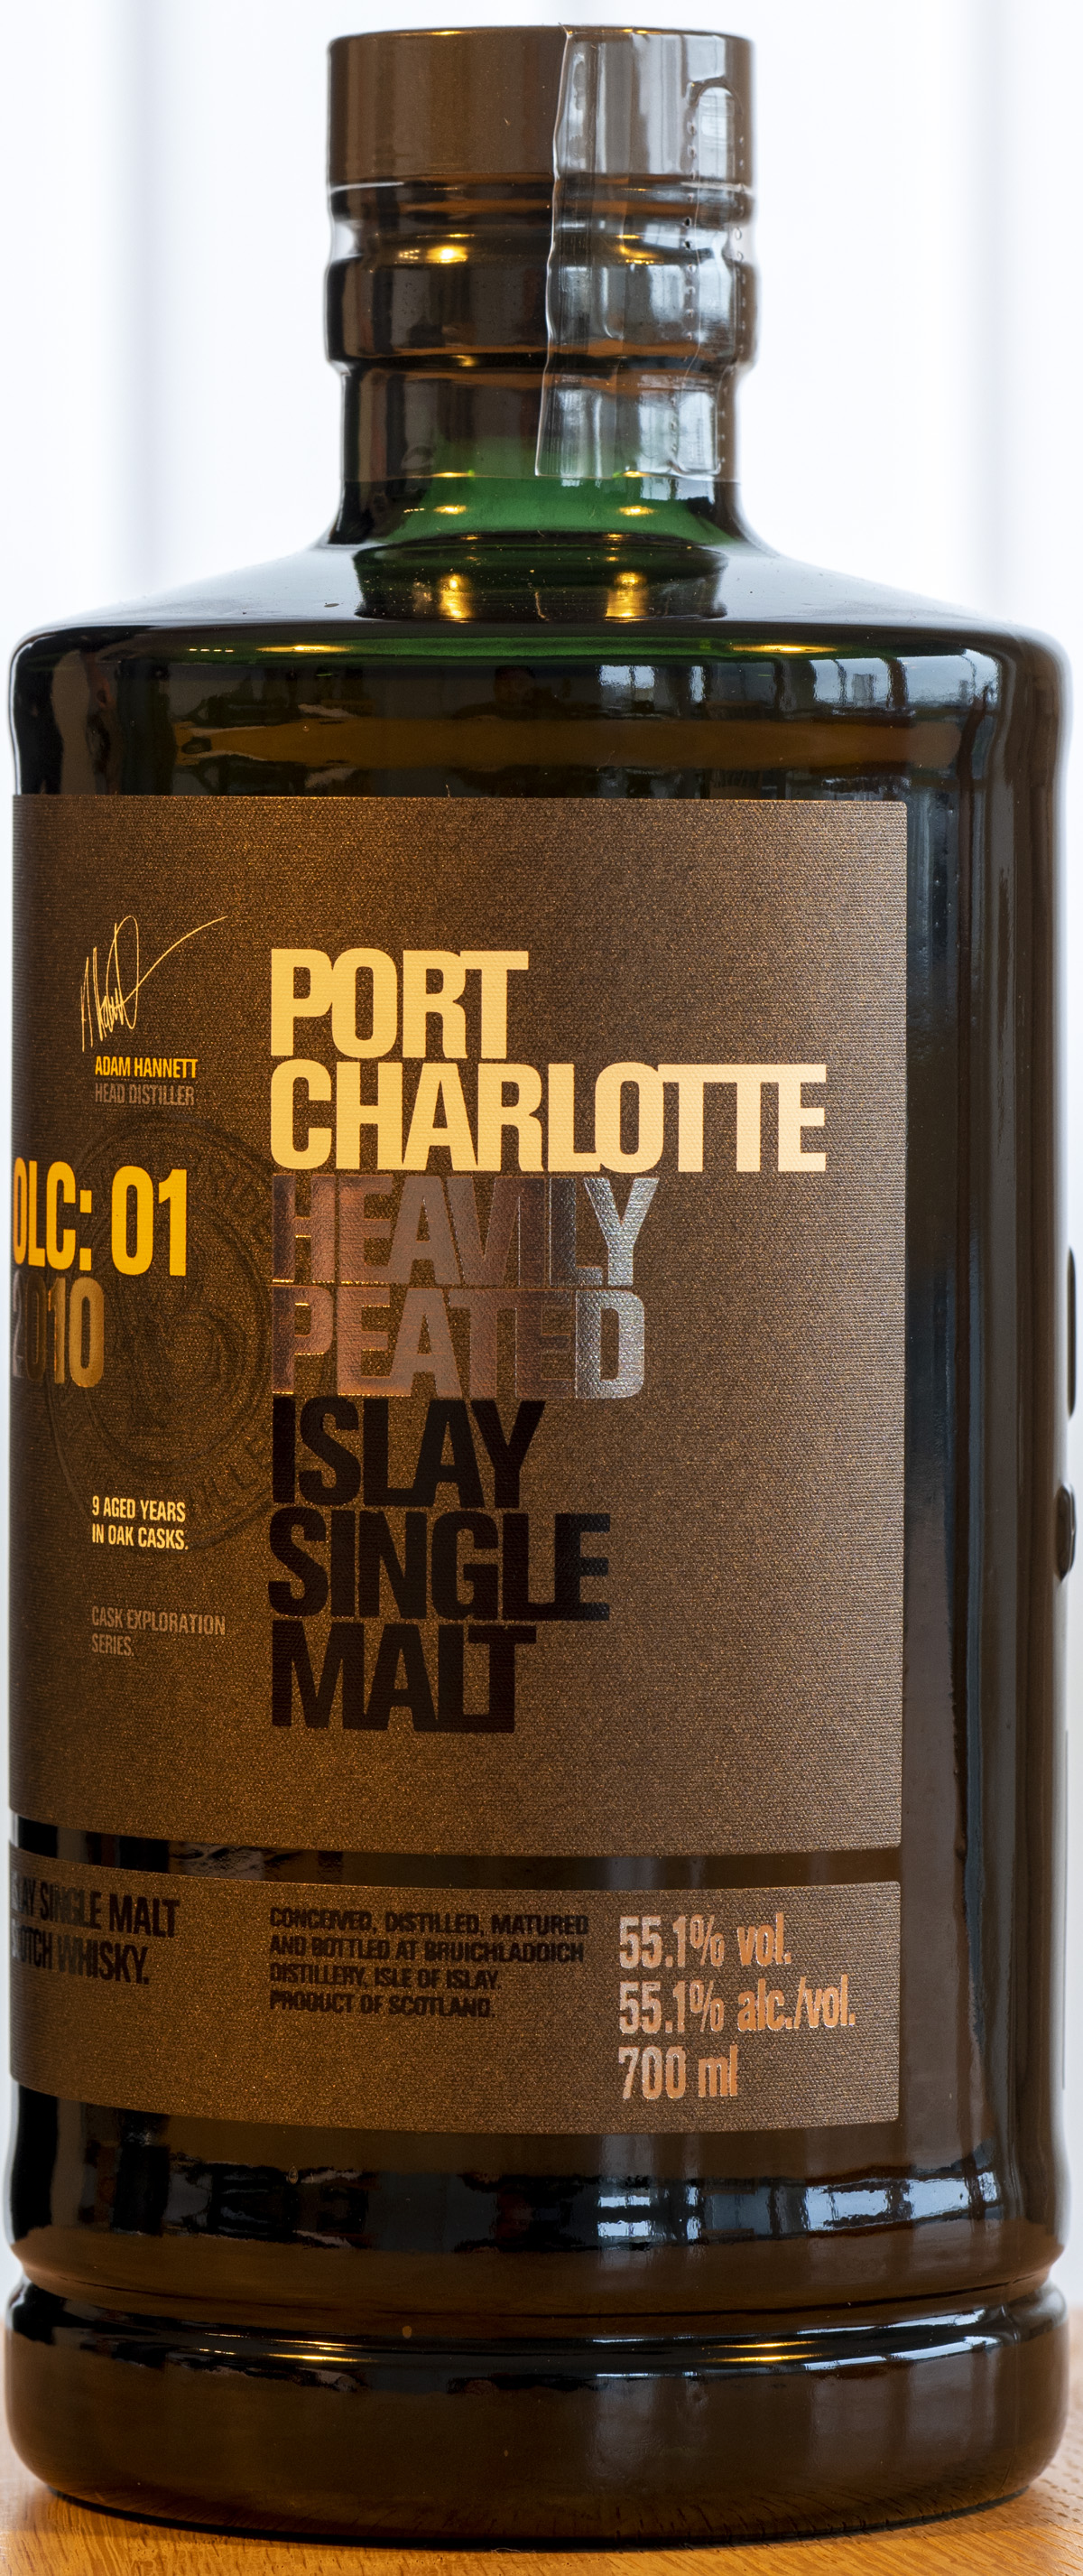 Billede: PHC_3922 - Port Charlotte OLC01 2010 - bottle front.jpg